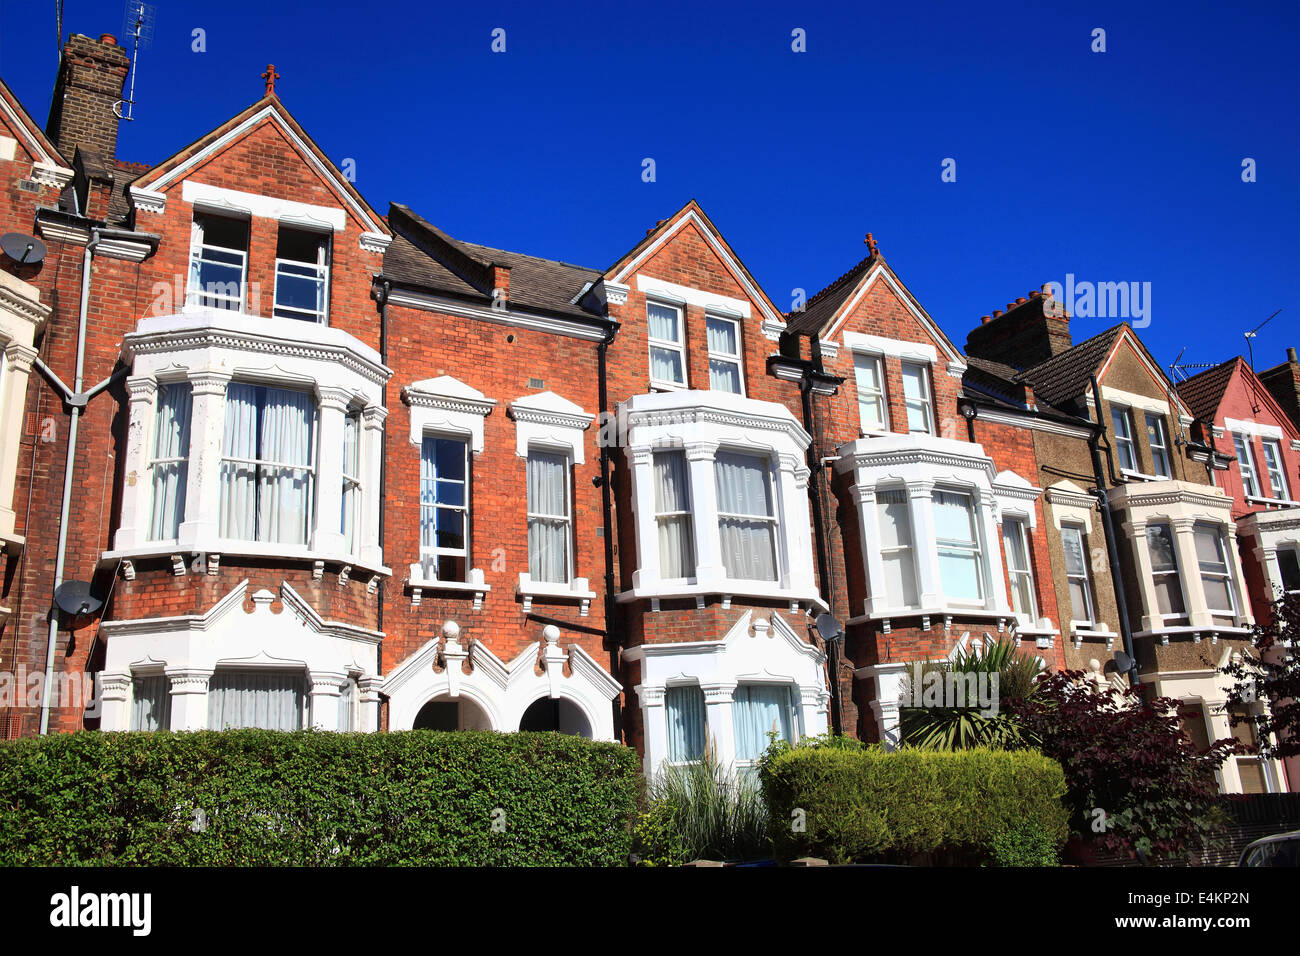 Maisons de ville victorienne avec terrasse dans la région de London, England, UK Banque D'Images